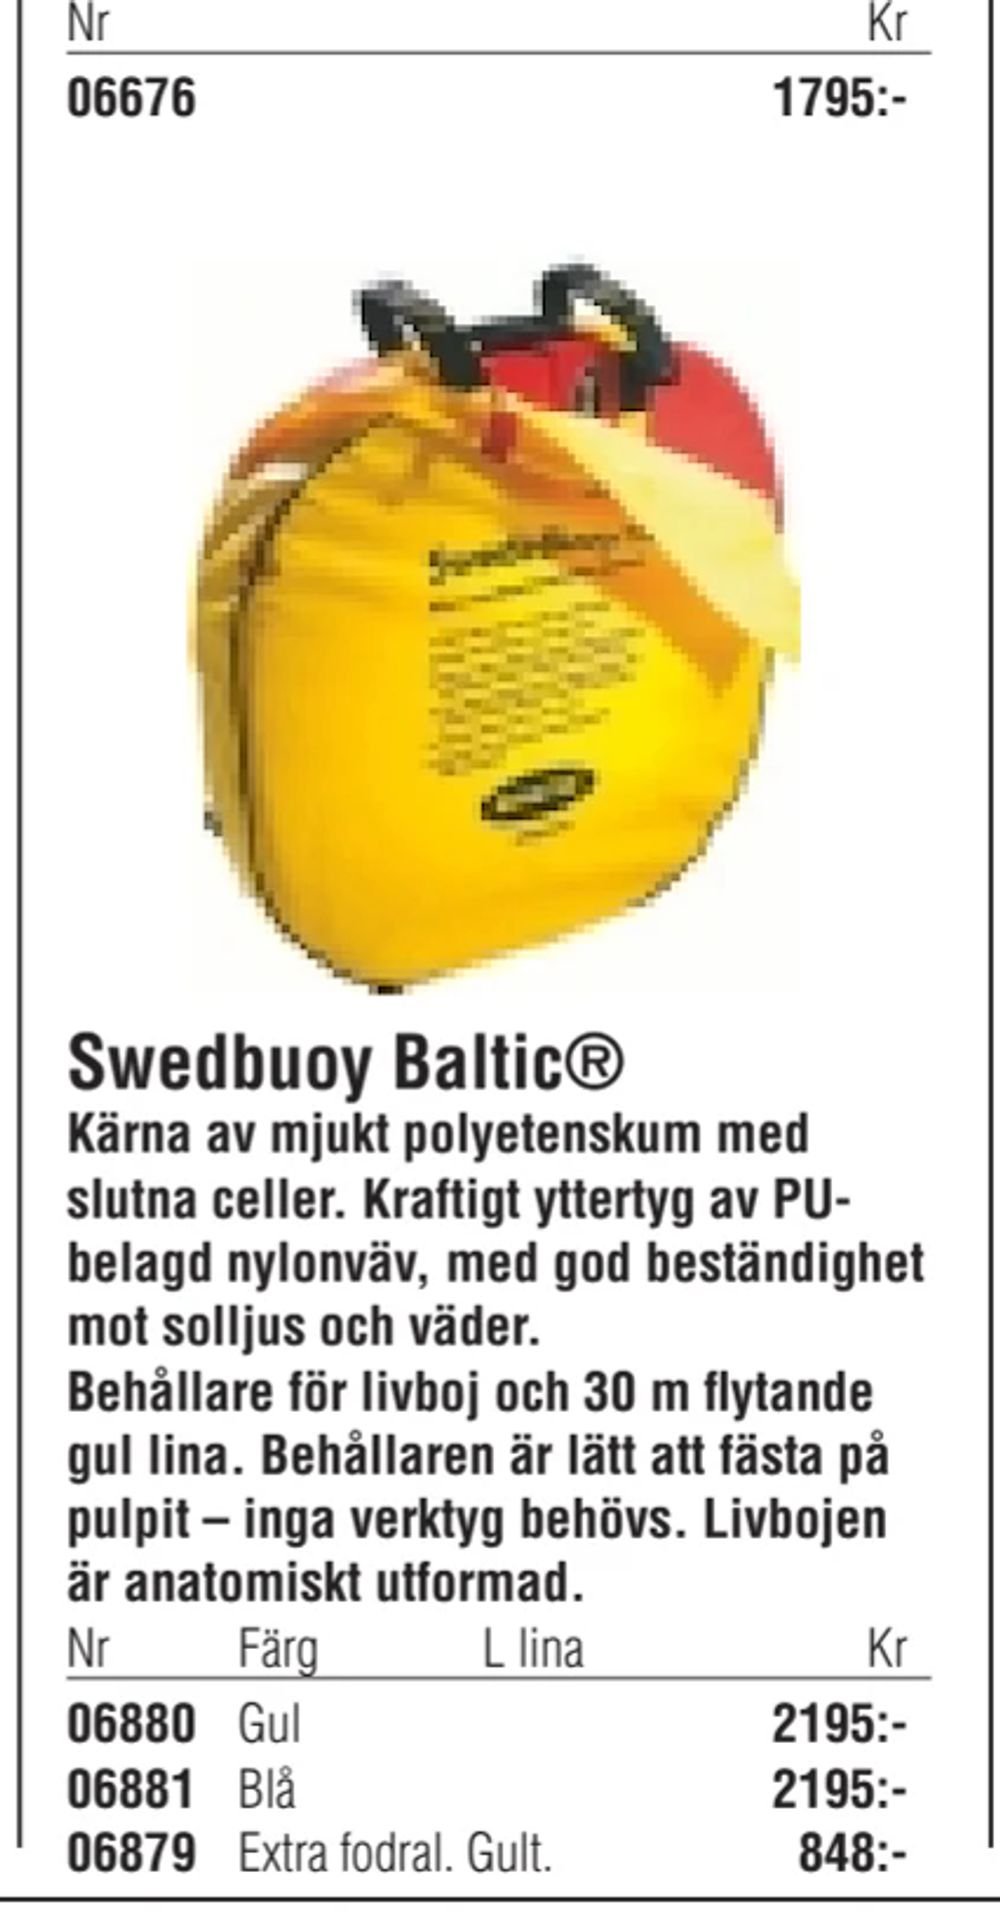 Erbjudanden på Swedbuoy Baltic® från Erlandsons Brygga för 2 195 kr